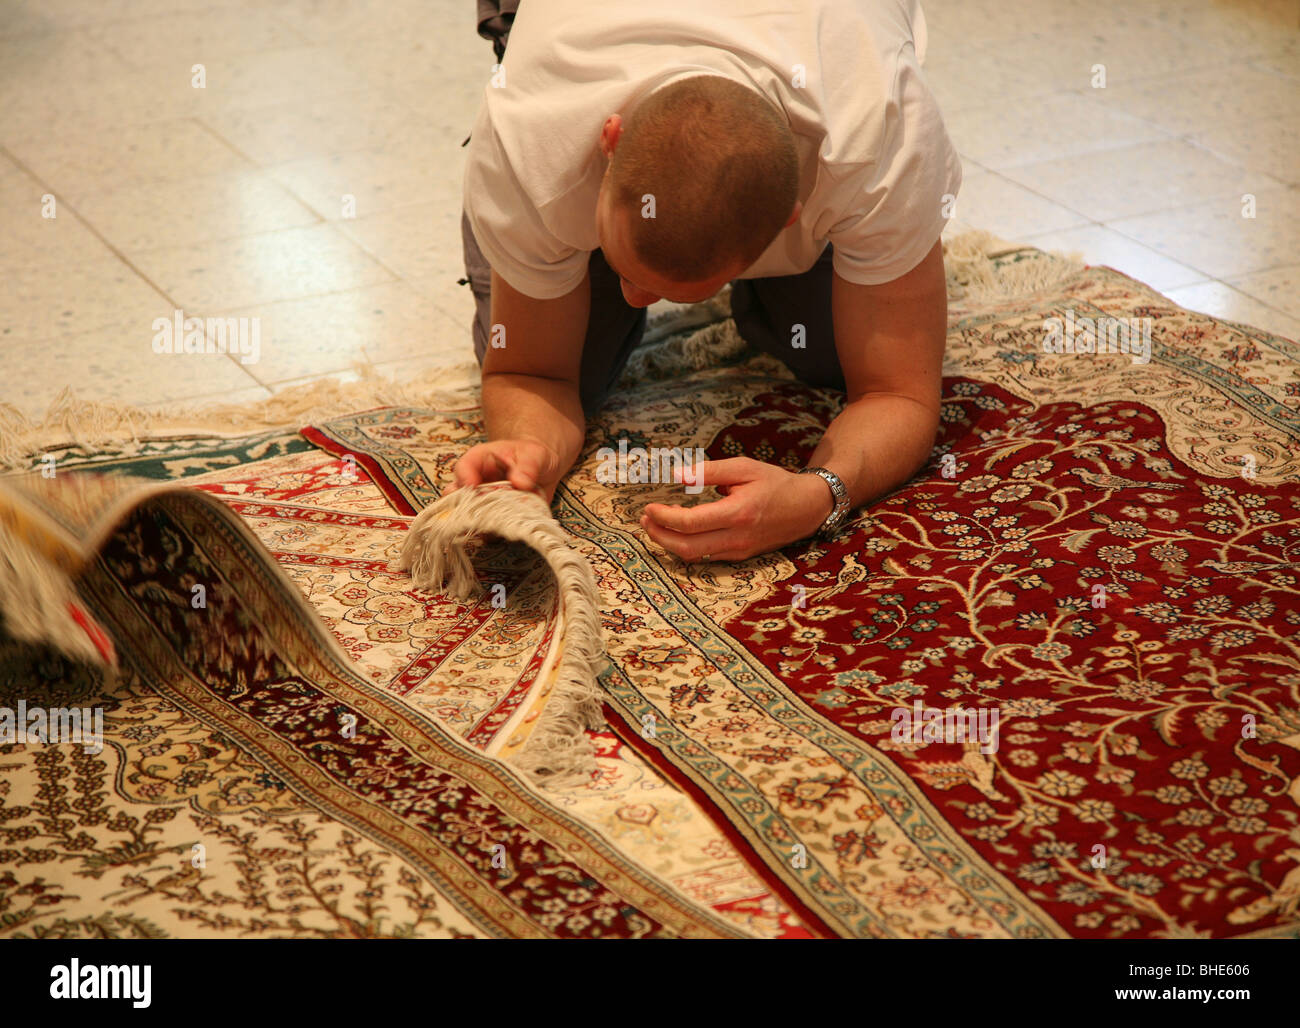 Un homme l'examen de la qualité de la moquette ou un tapis à un prix de  vente à Kairouan Tunisie Afrique du Nord Photo Stock - Alamy